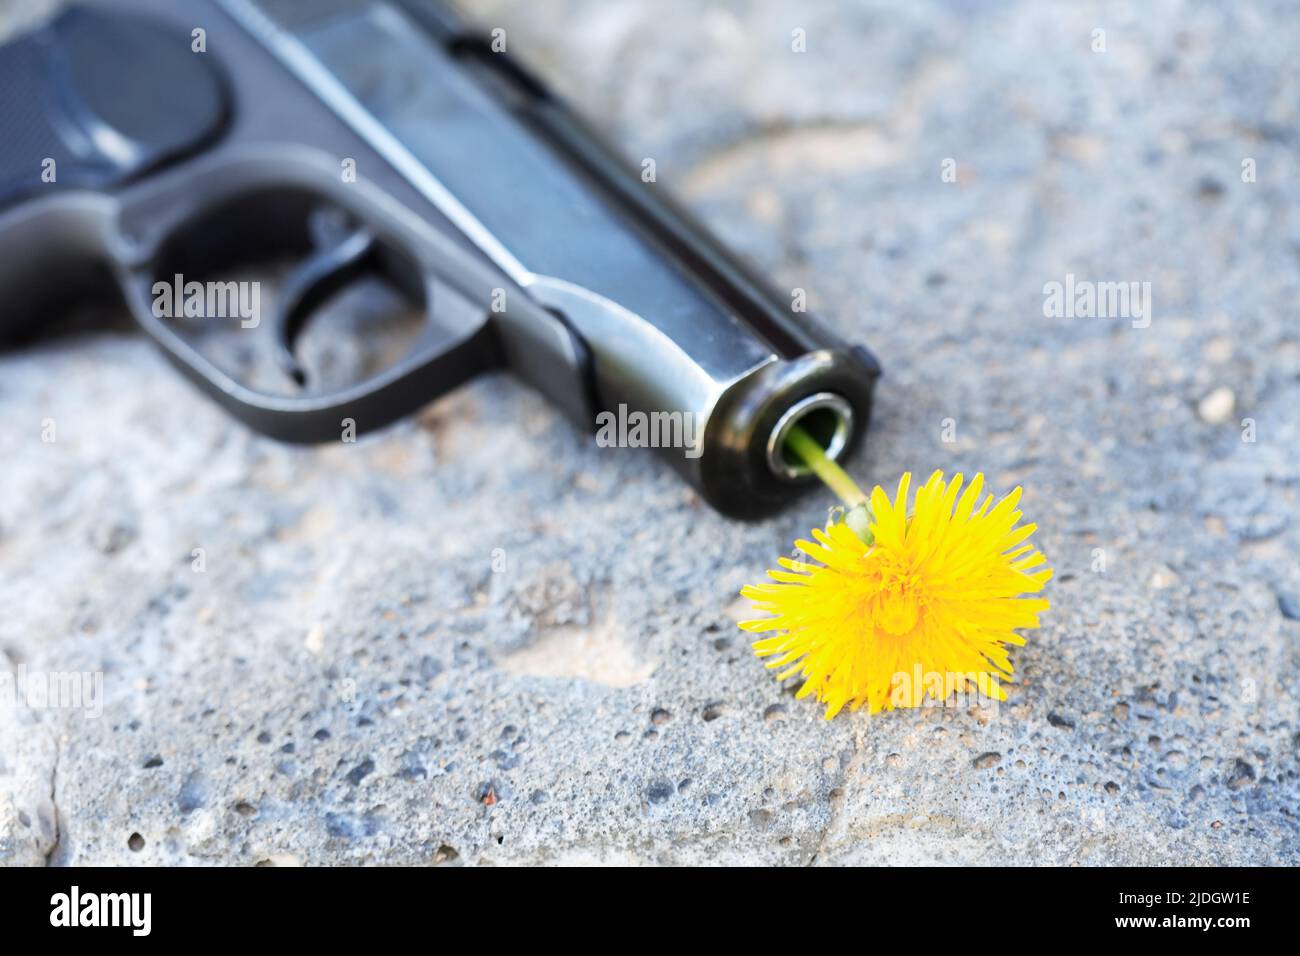 Símbolo del desarme. Agradable diente de león amarillo en el cañón de una pistola Foto de stock